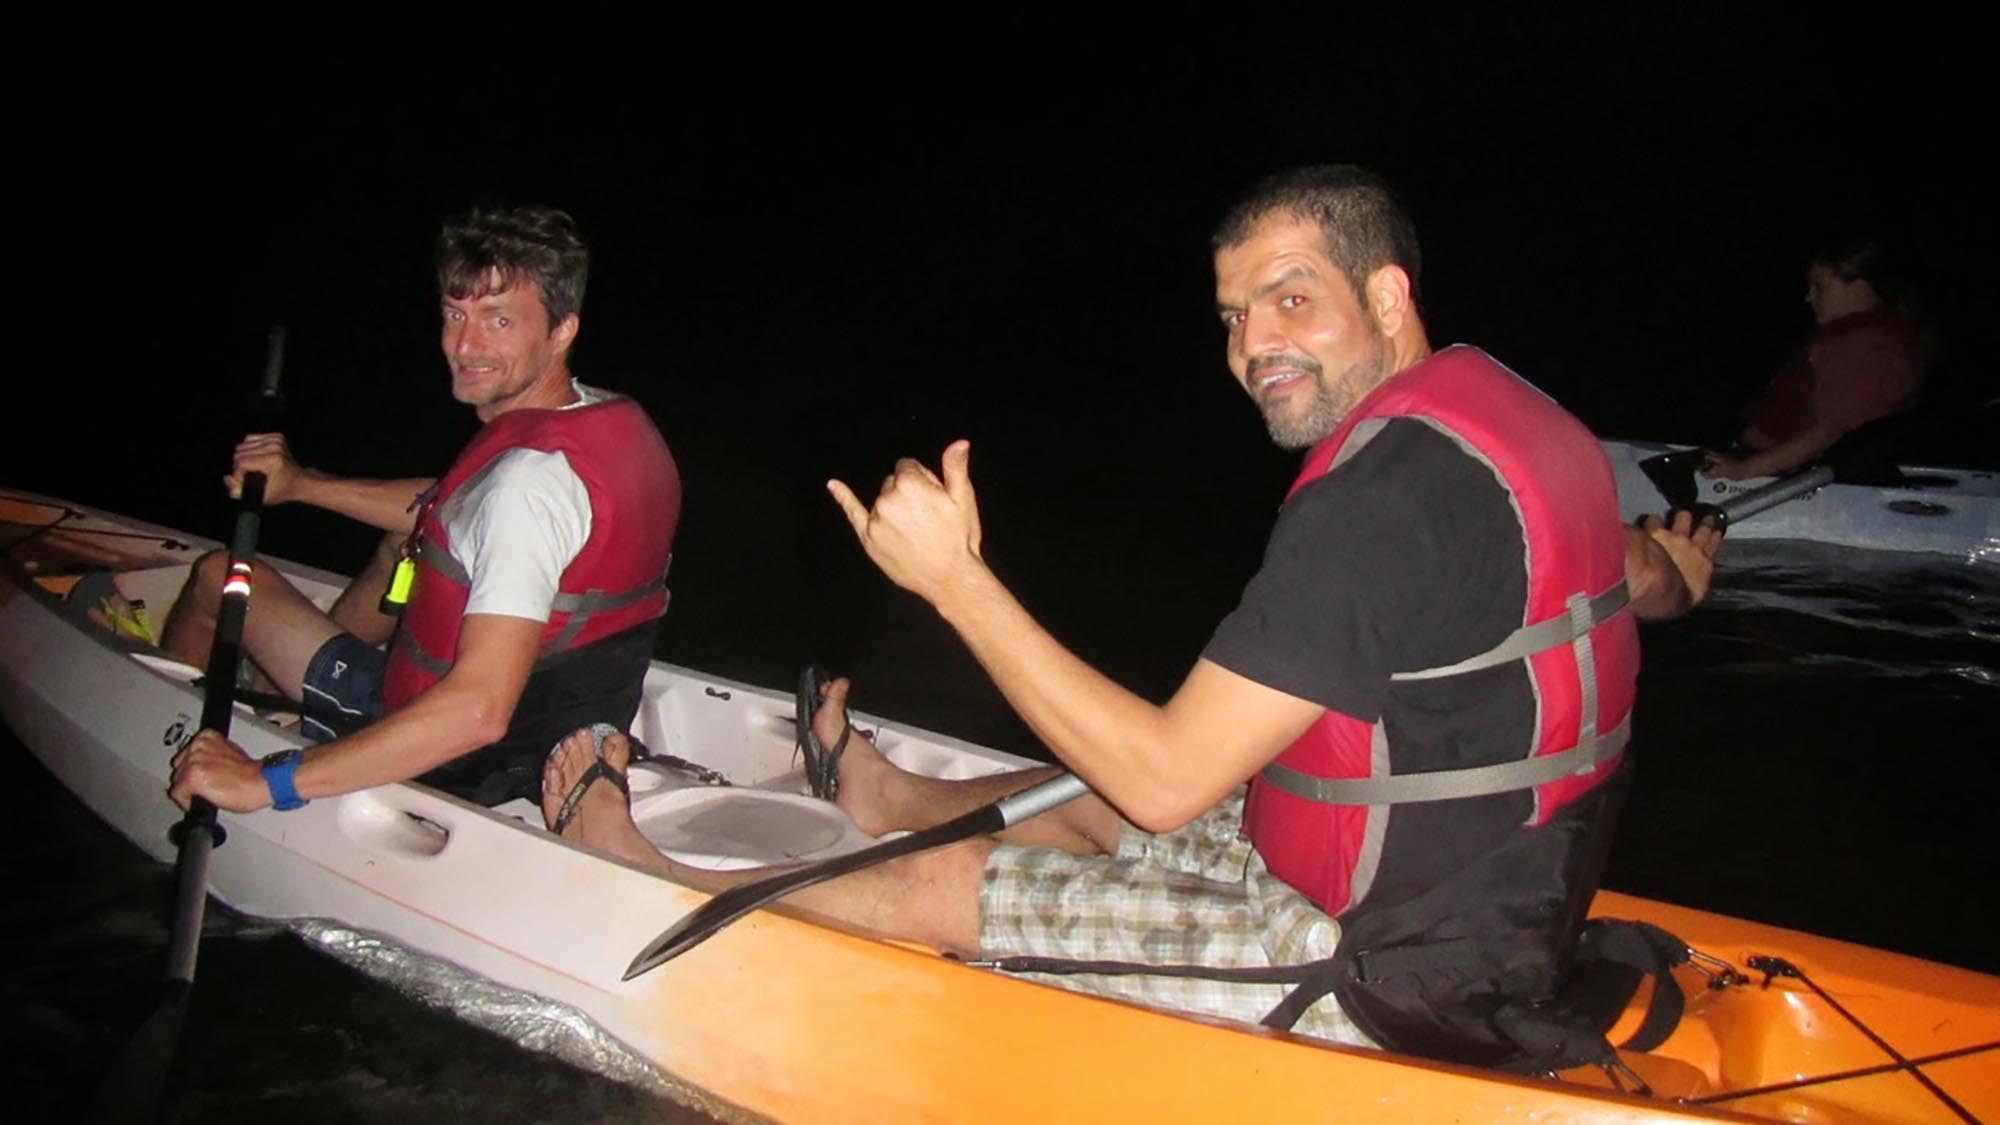 Kayaking Florida